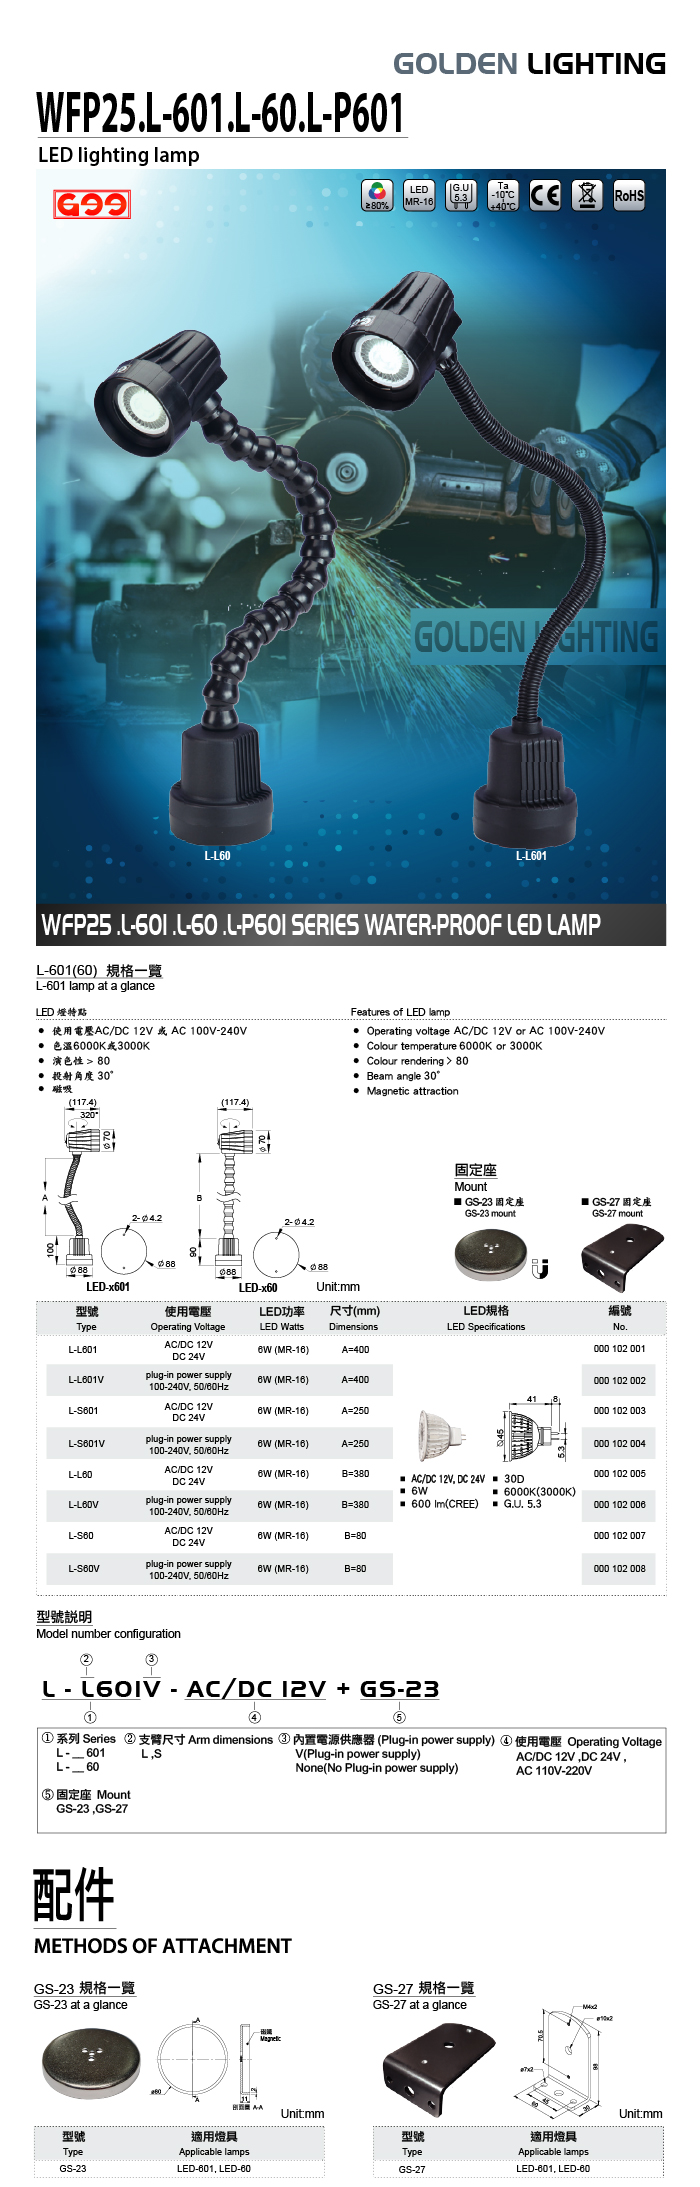 LED-601.60 聚光型LED工作燈